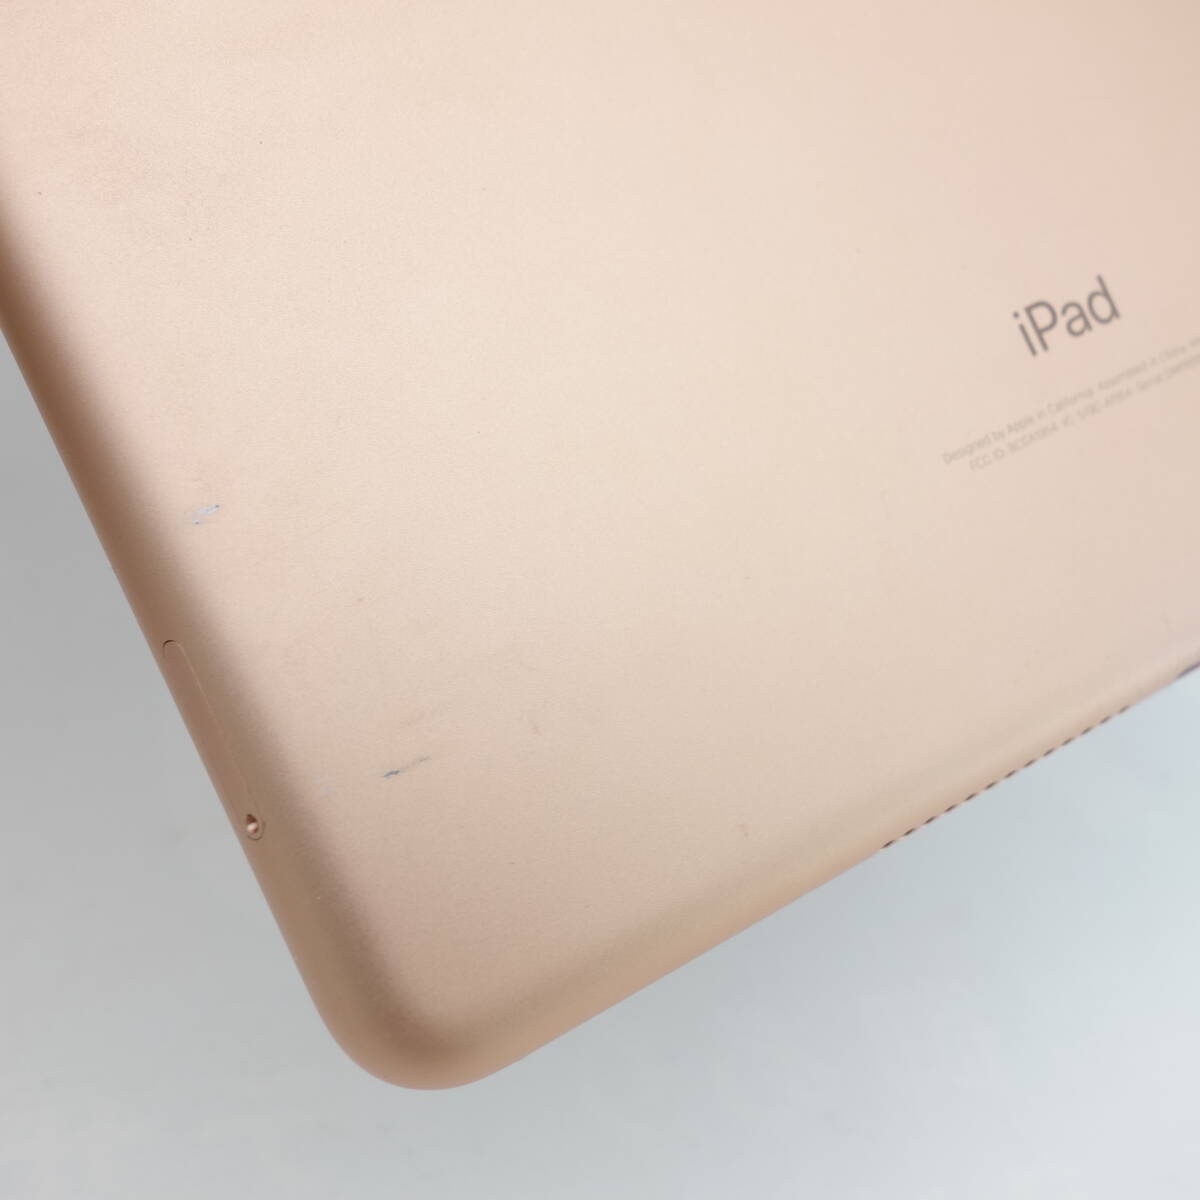 【ジャンク】iPad 第6世代 32GB ゴールド Cellularモデル Softbank版 充電端子接触不良 部品取り用_画像6